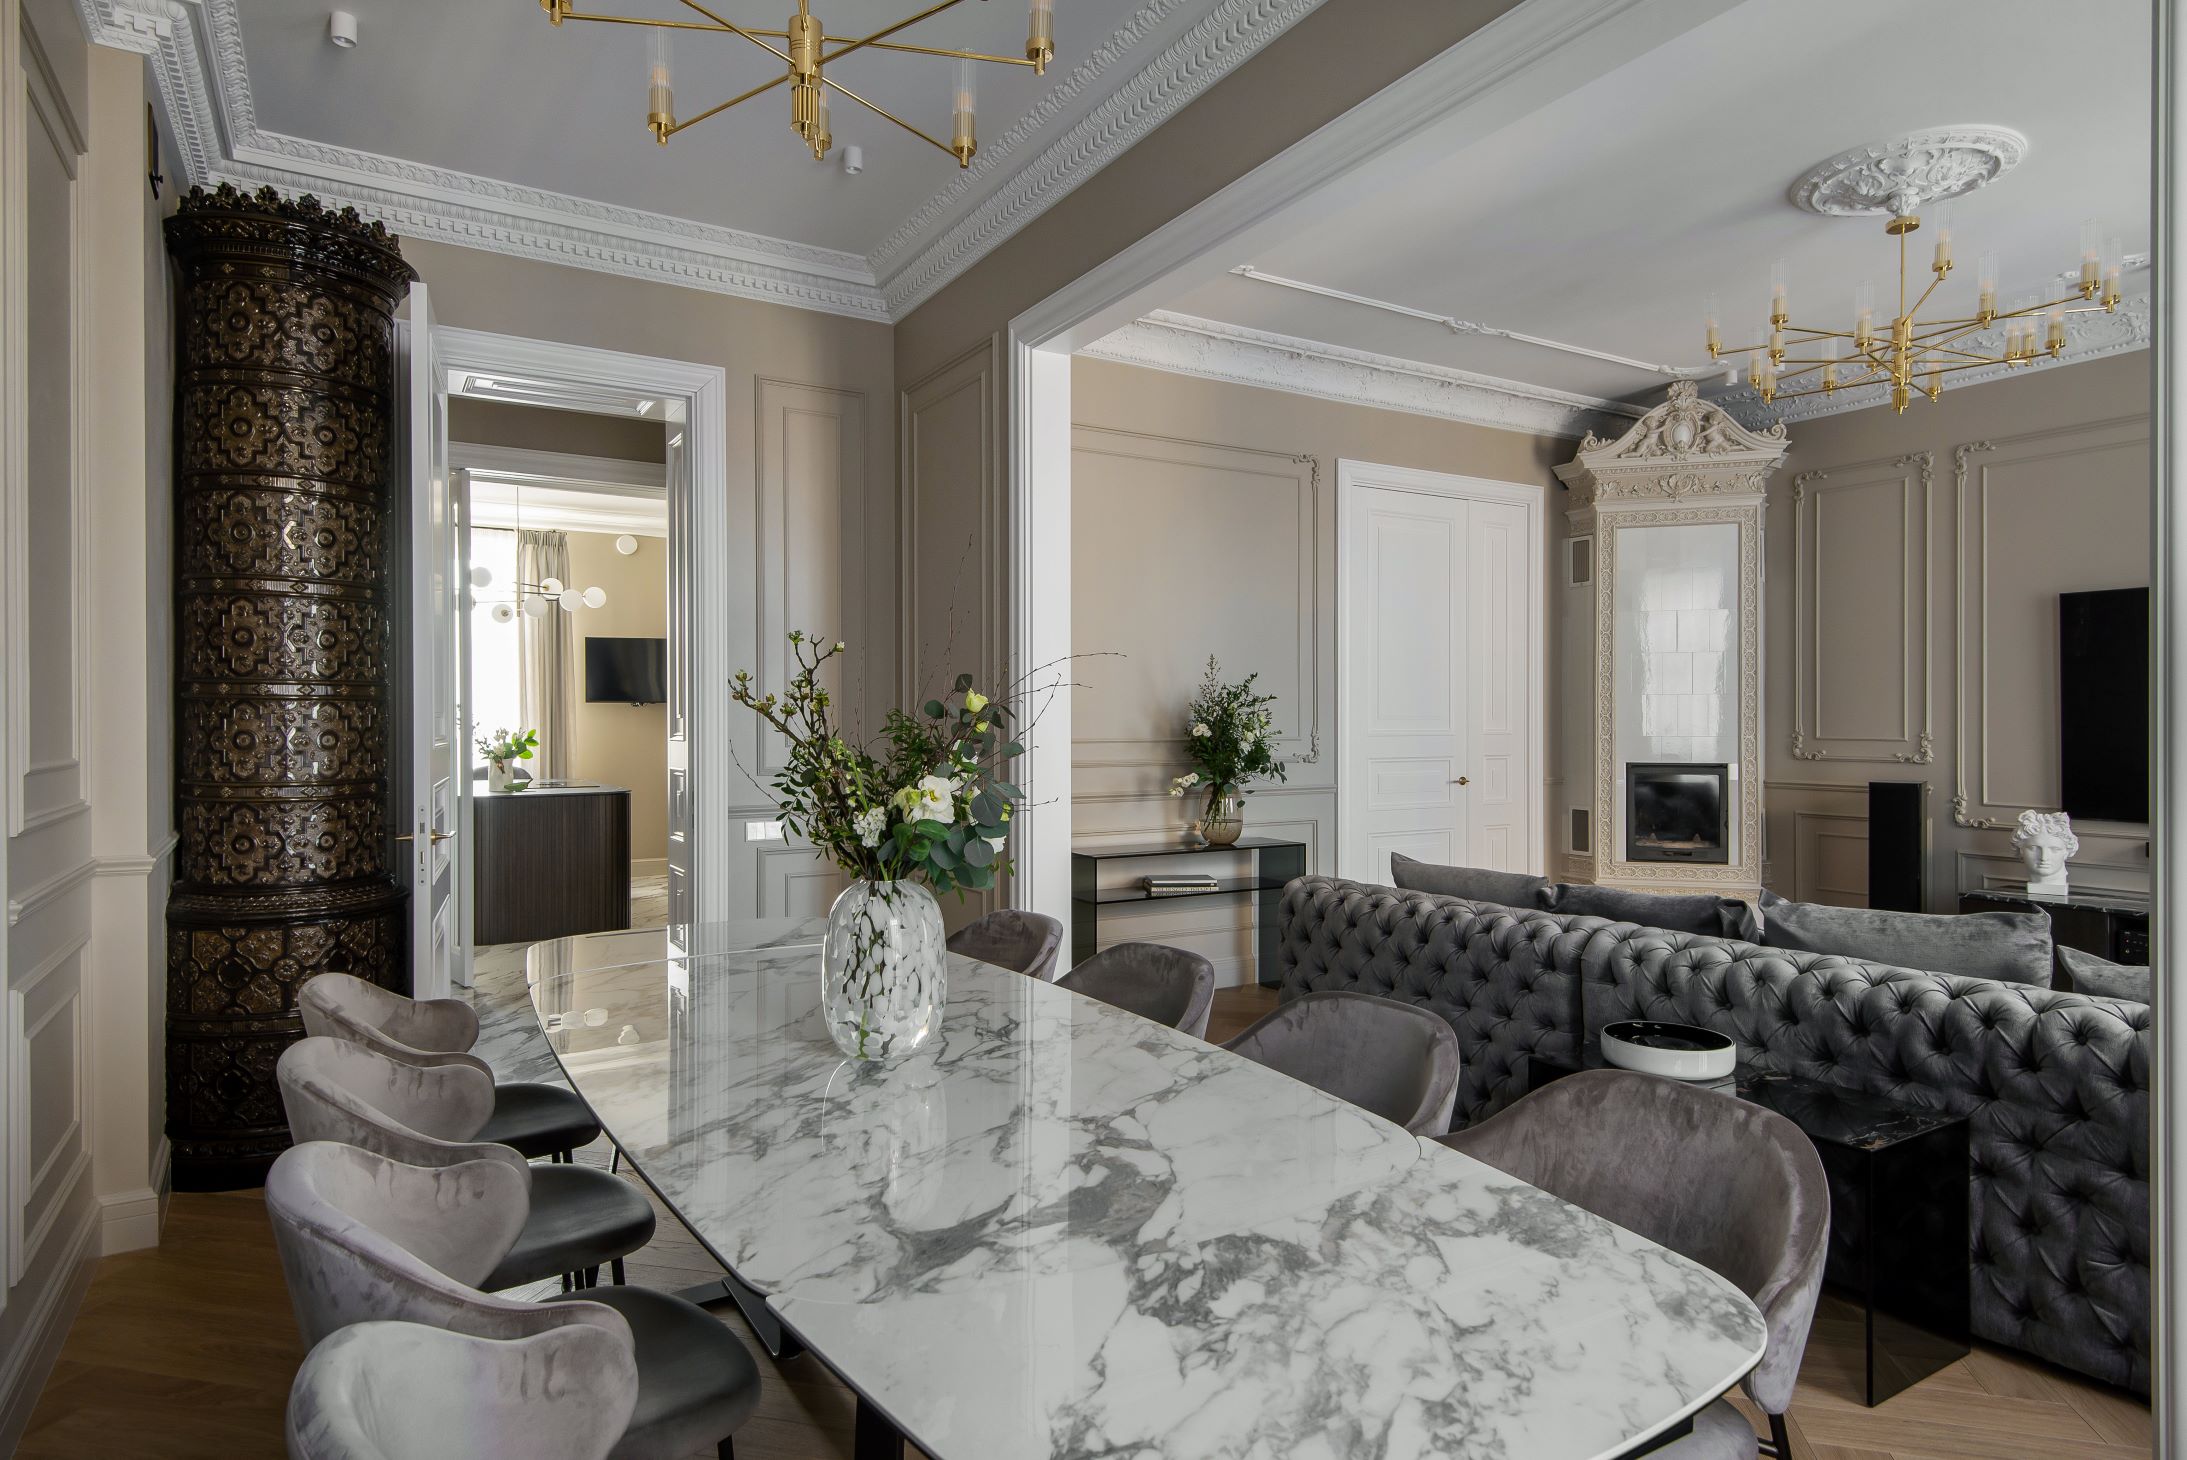 Klasisks dzīvoklis Rīgas centrā - dzīvojama isataba ar lielu marmora galdu